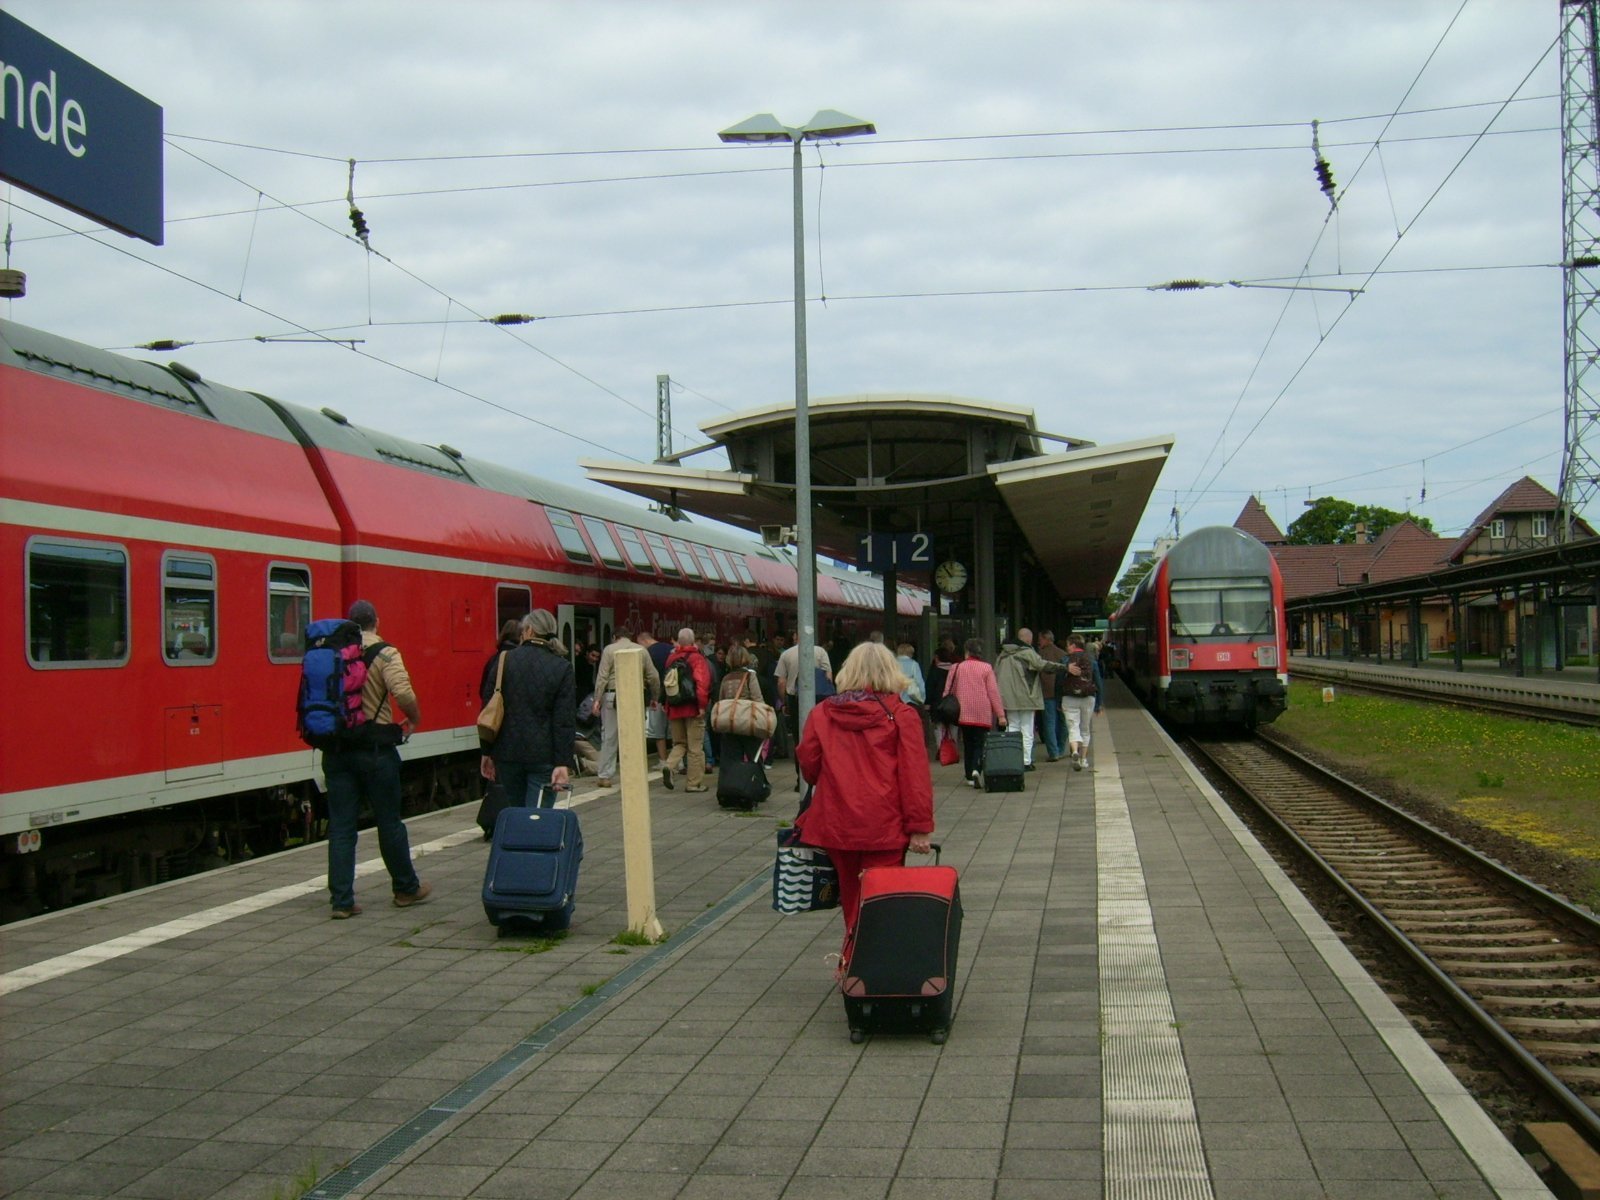 Farbfoto: Der WARNEMÜNDE EXPRESS im Bahnhof von Warnemünde im Juni 2009. Fotograf: Bernd Paepcke.